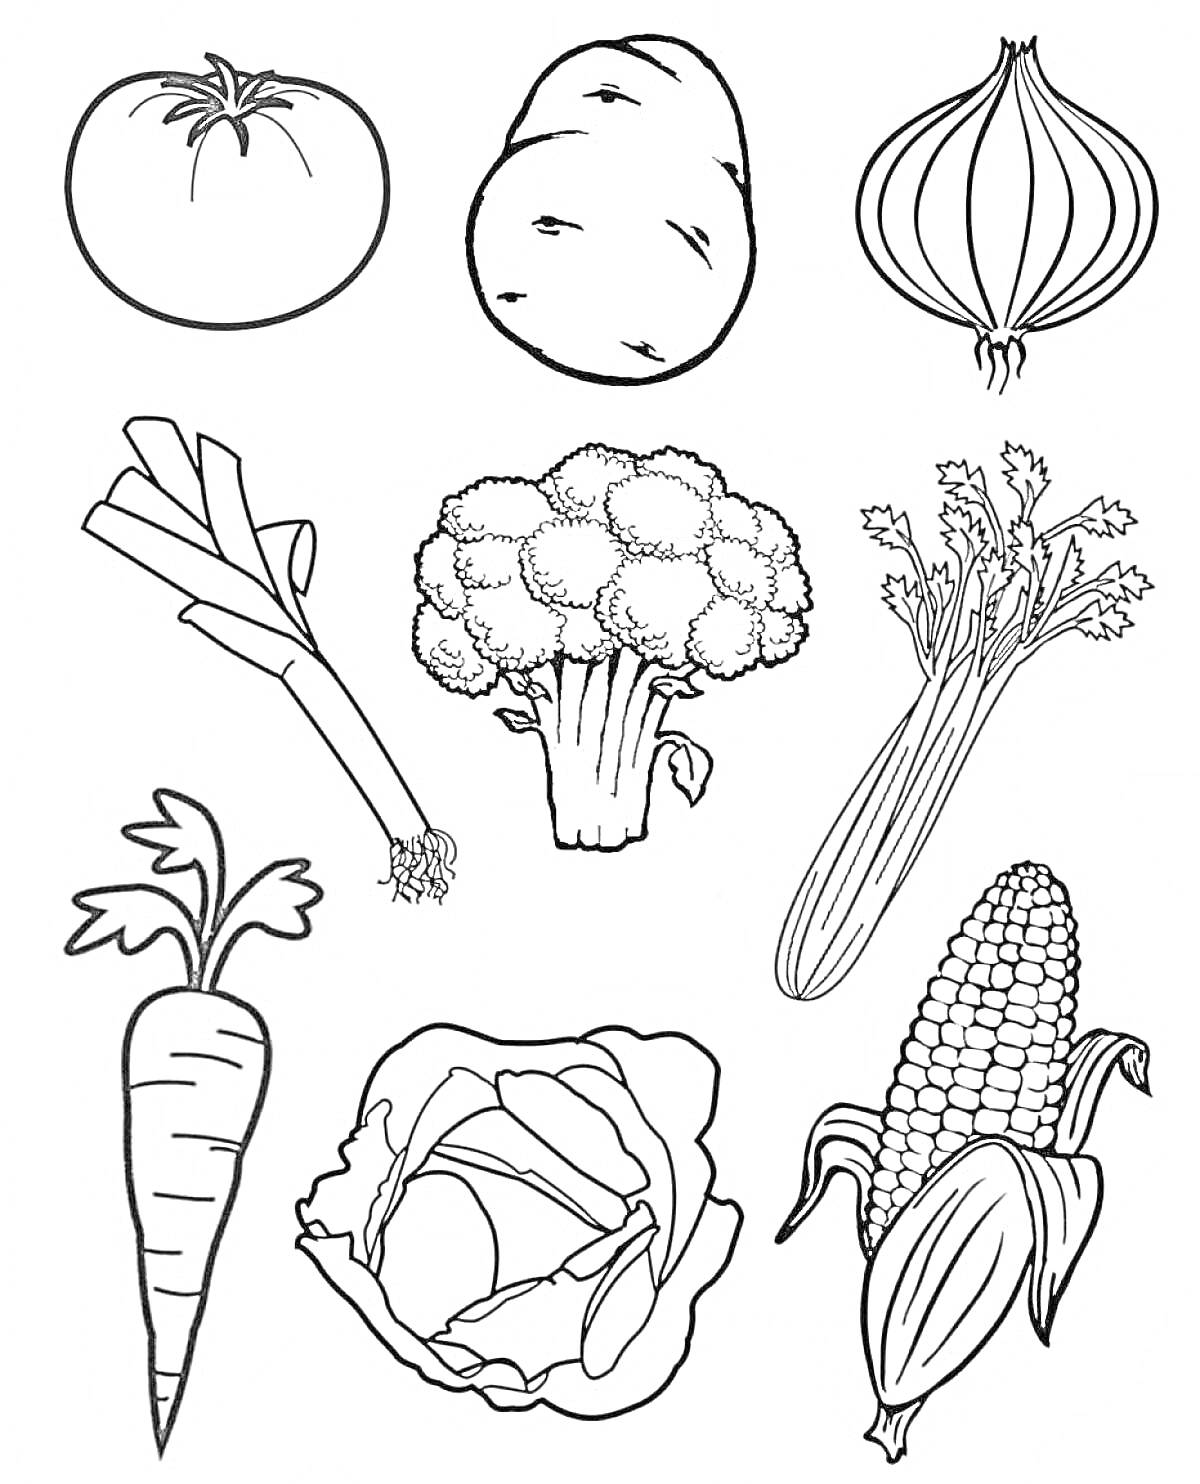 Раскраска Помидор, картошка, лук, лук-порей, брокколи, сельдерей, морковь, капуста, кукуруза